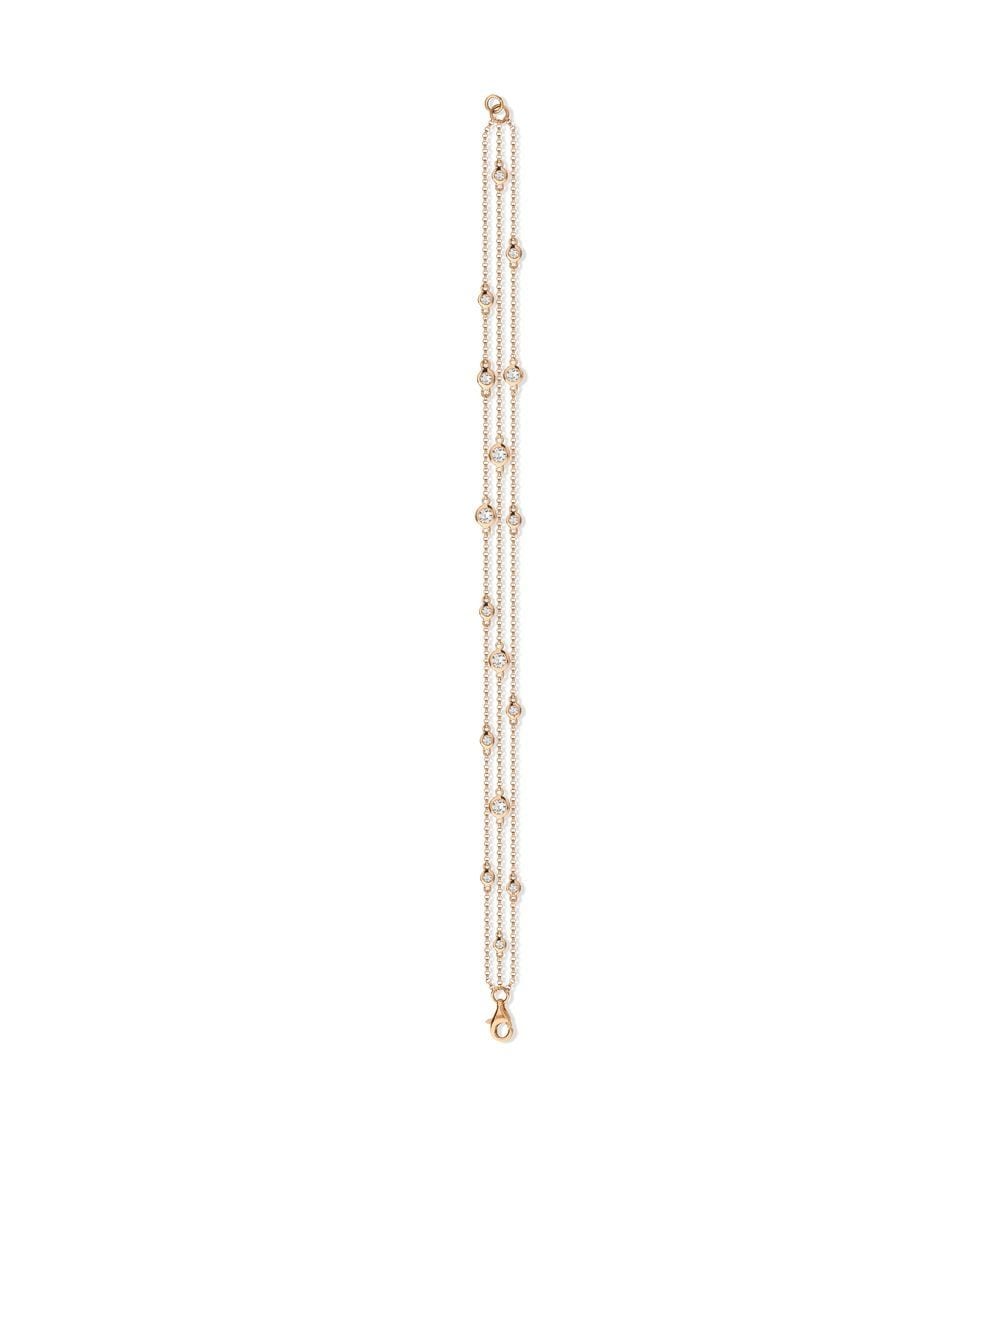 Pragnell 18kt rose gold Sundance diamond bracelet - Rosa von Pragnell